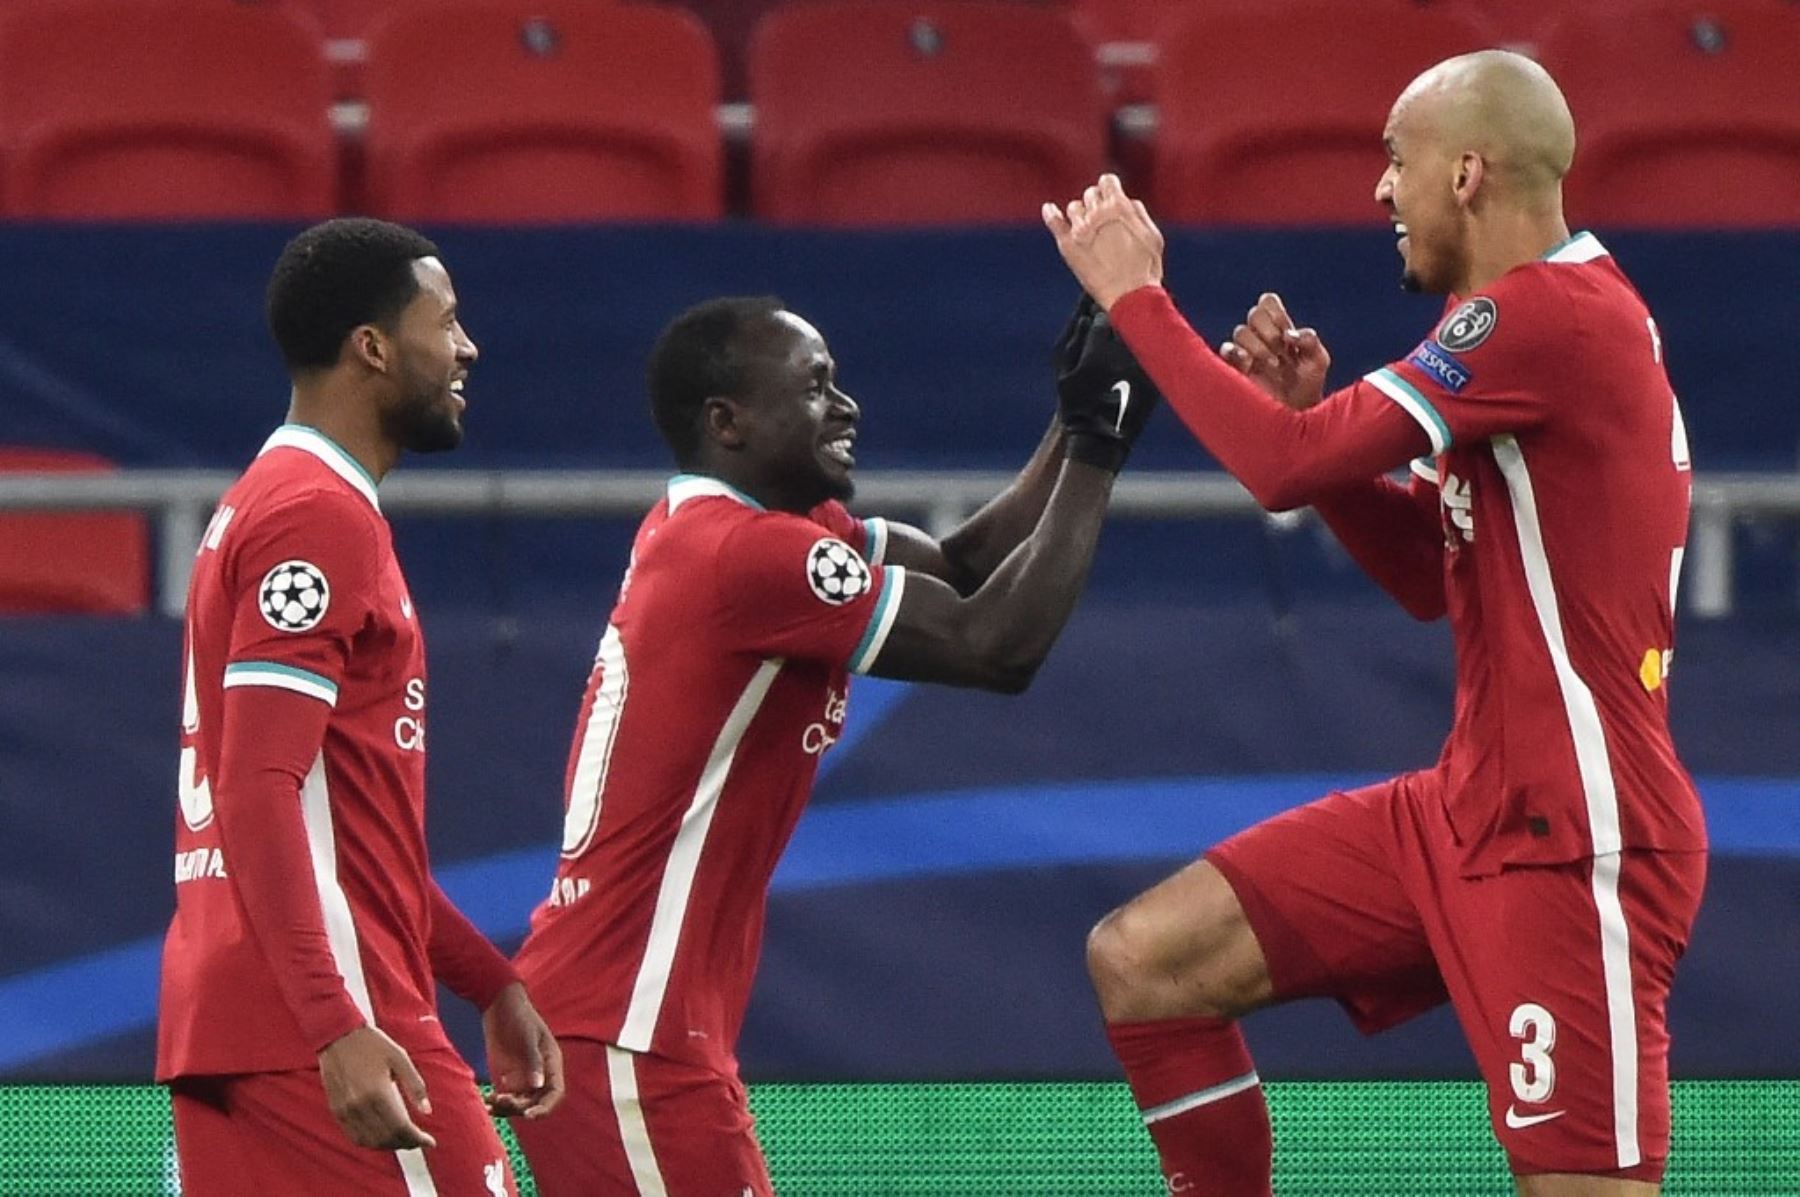 Liverpool avanza a los cuartos de final de la Liga de Campeones